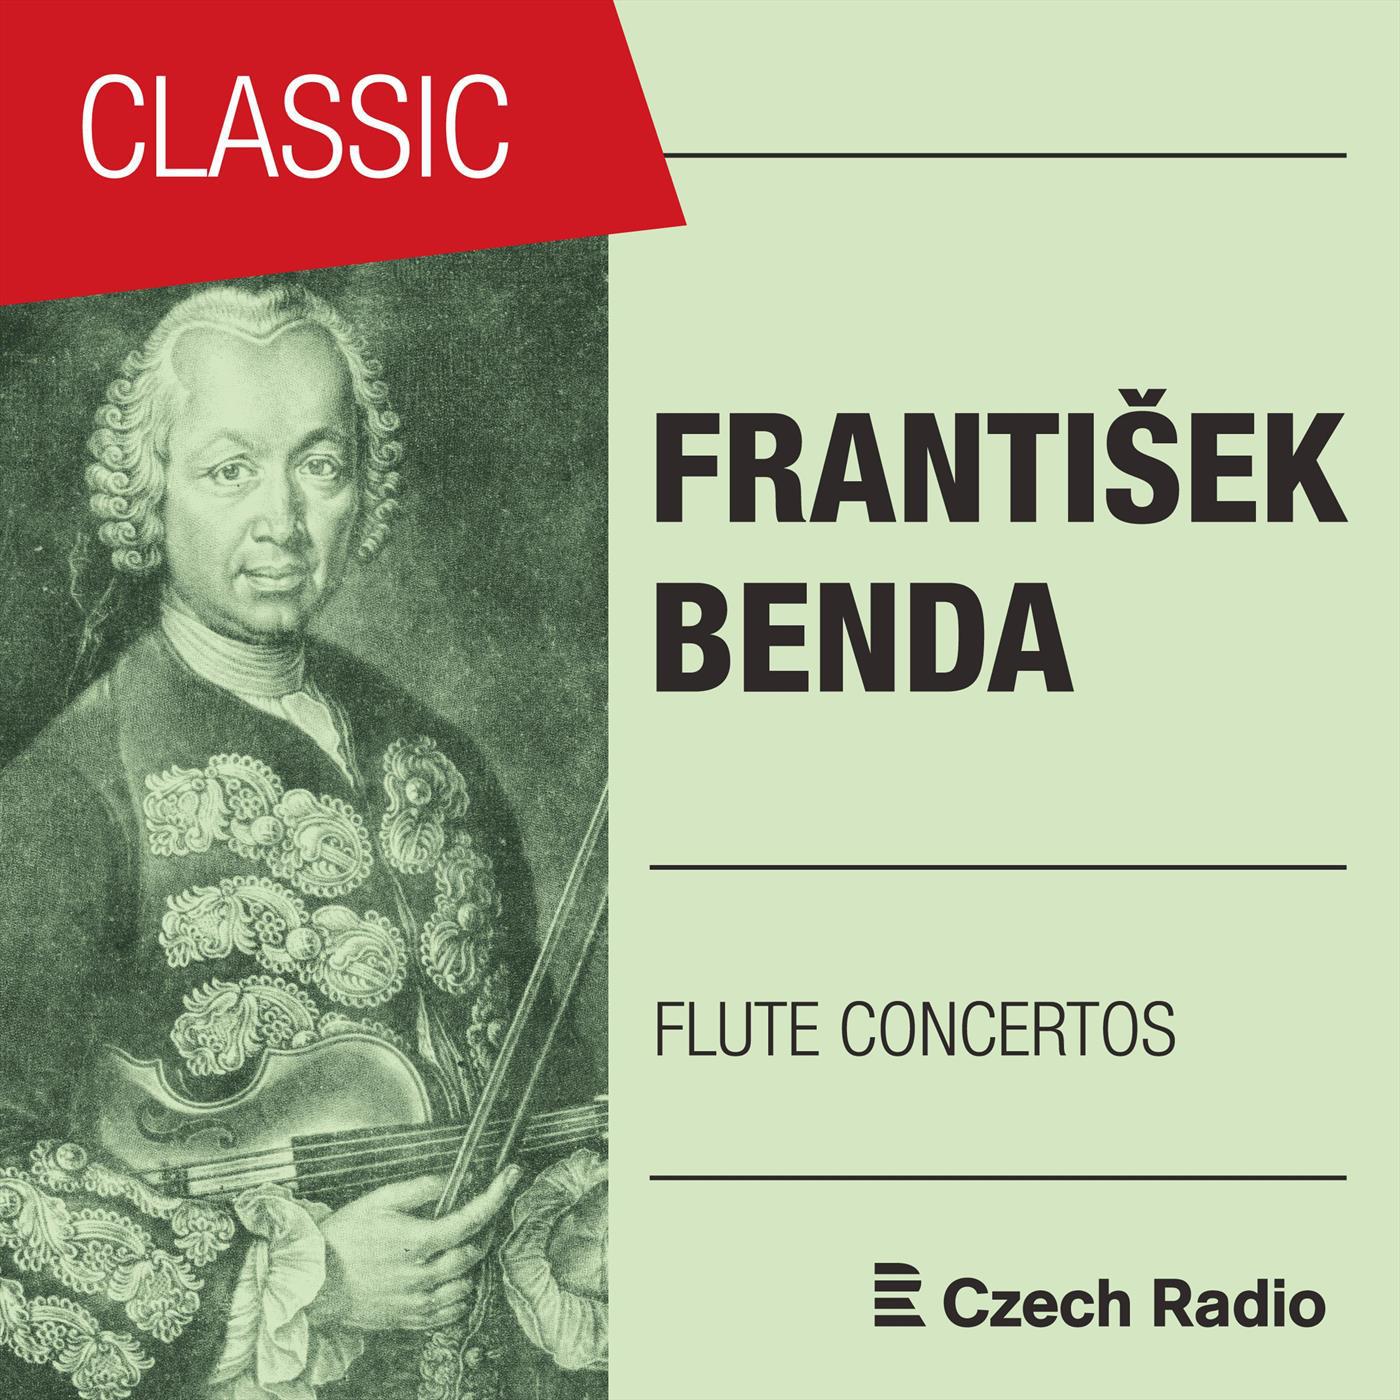 Concerto for Flute and Orchestra in A Minor: II. Andante ma con spirito